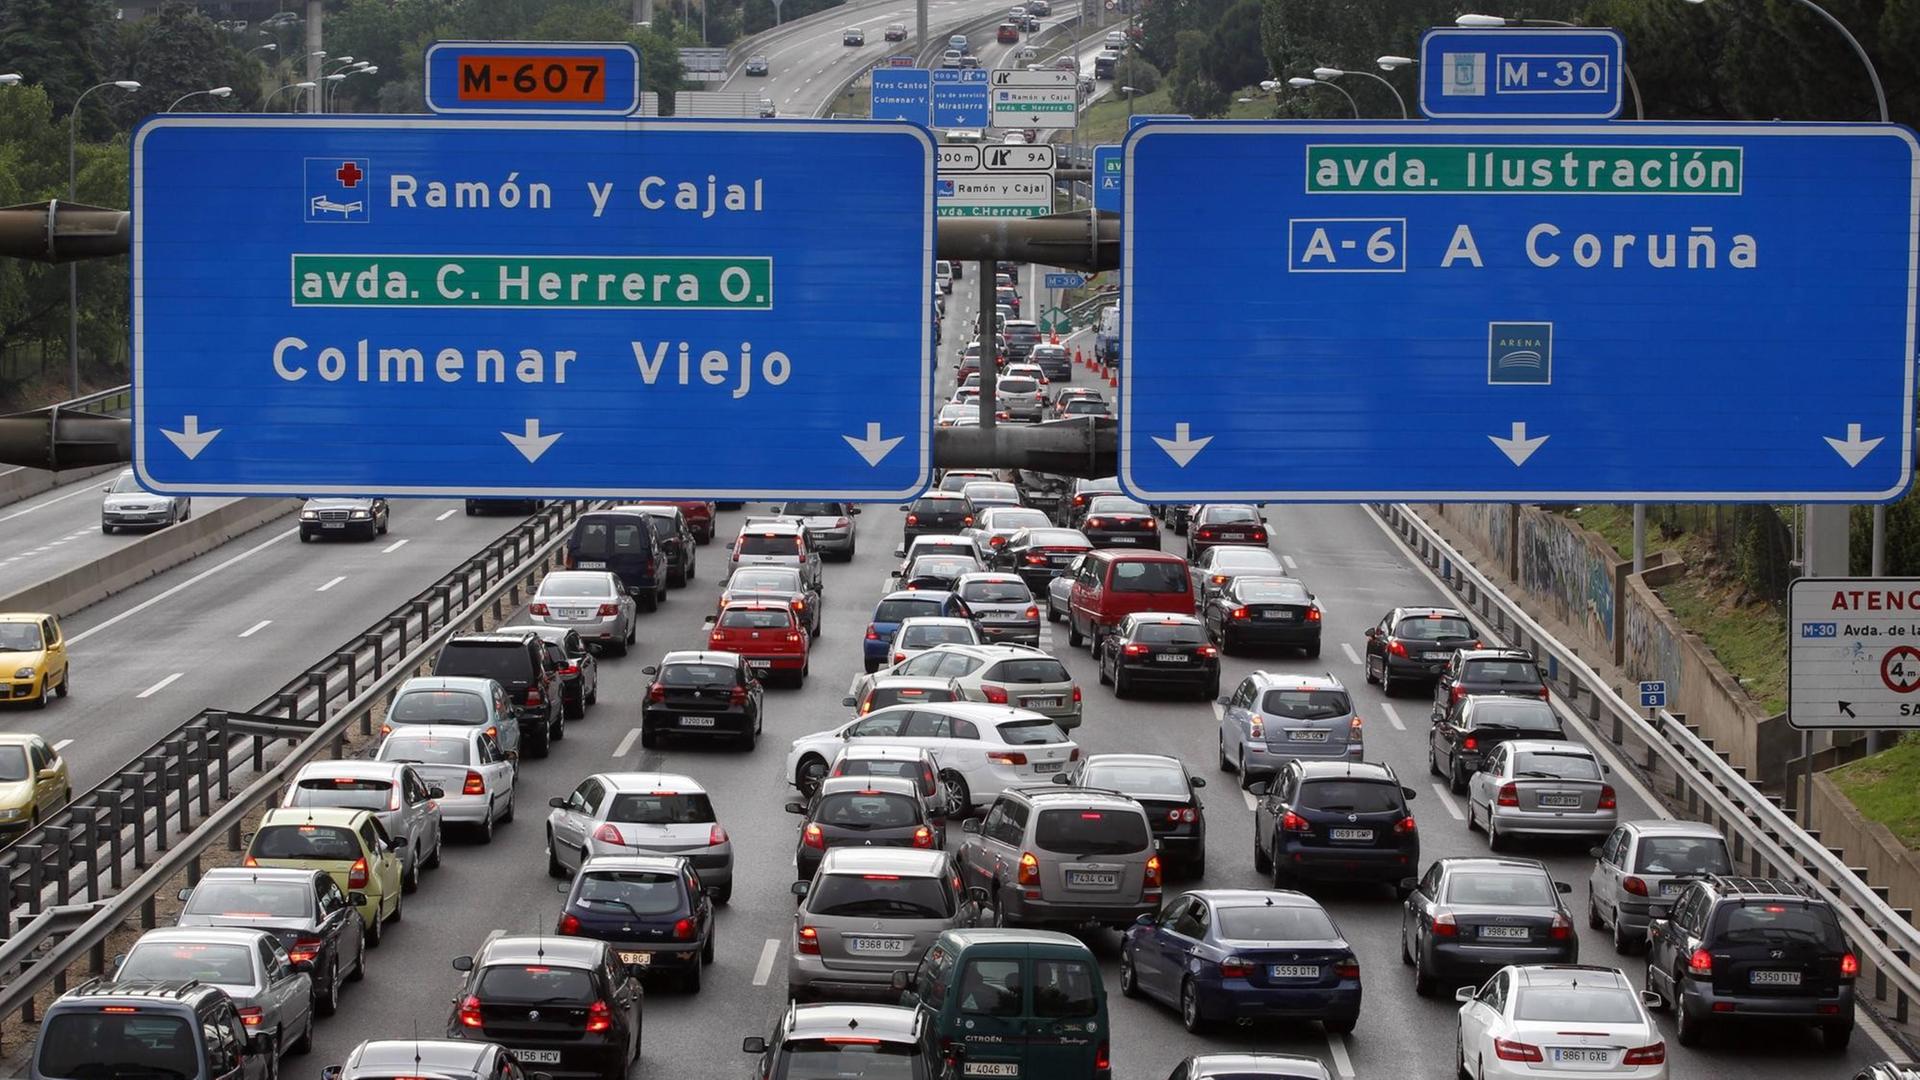 Verkehrsstau auf einer Autobahn bei Madrid.